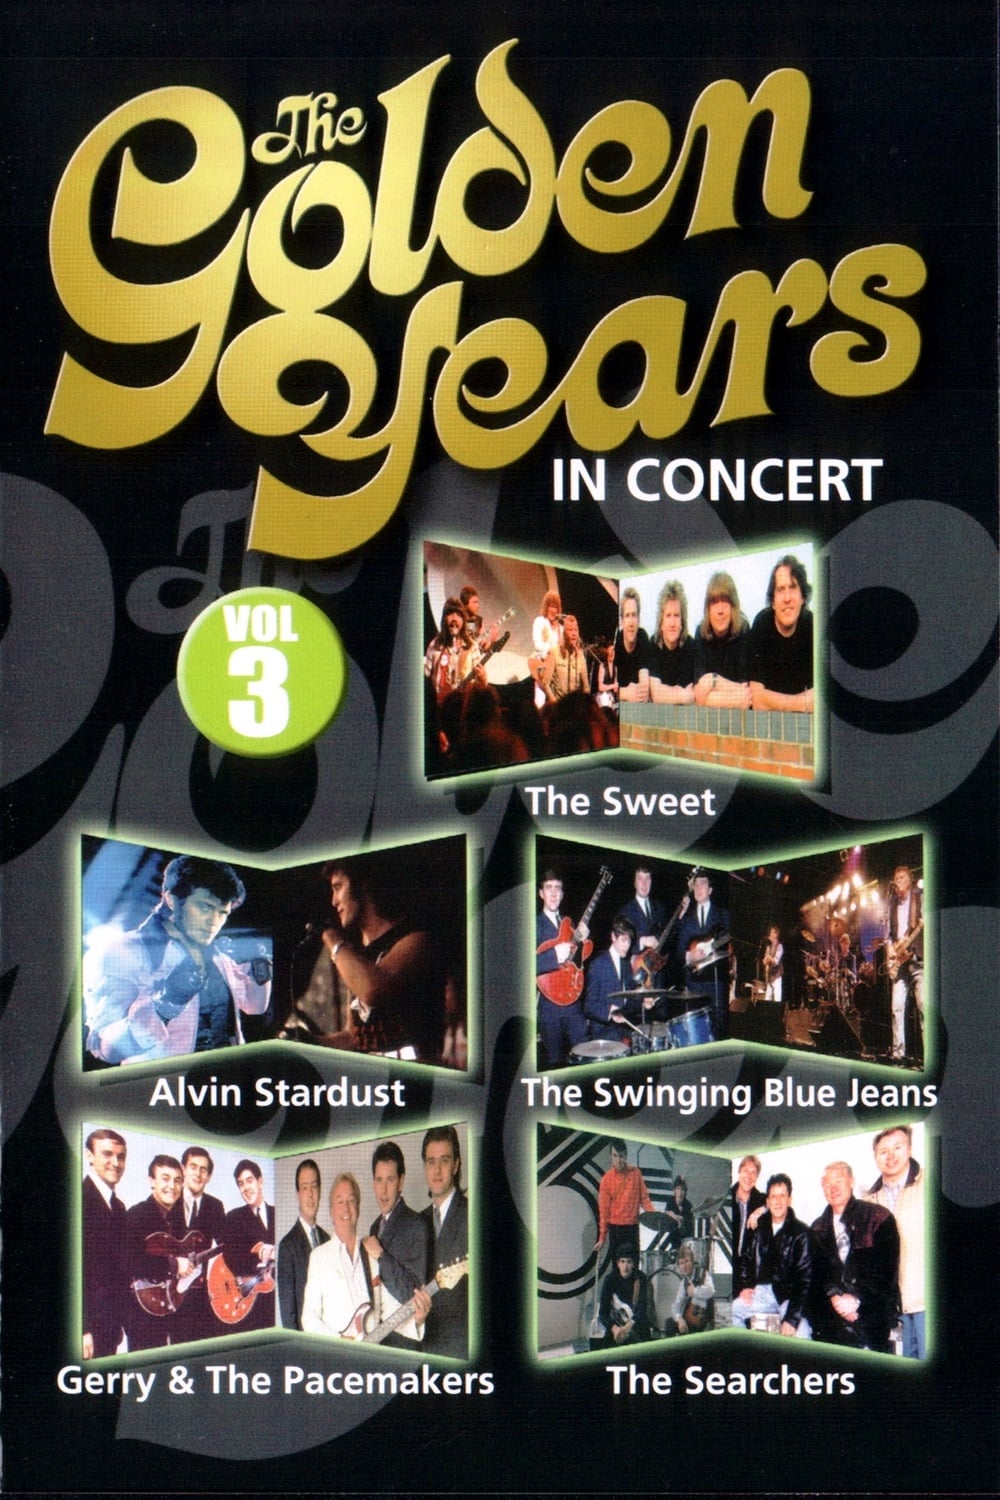 The Golden Years in Concert Vol. 3